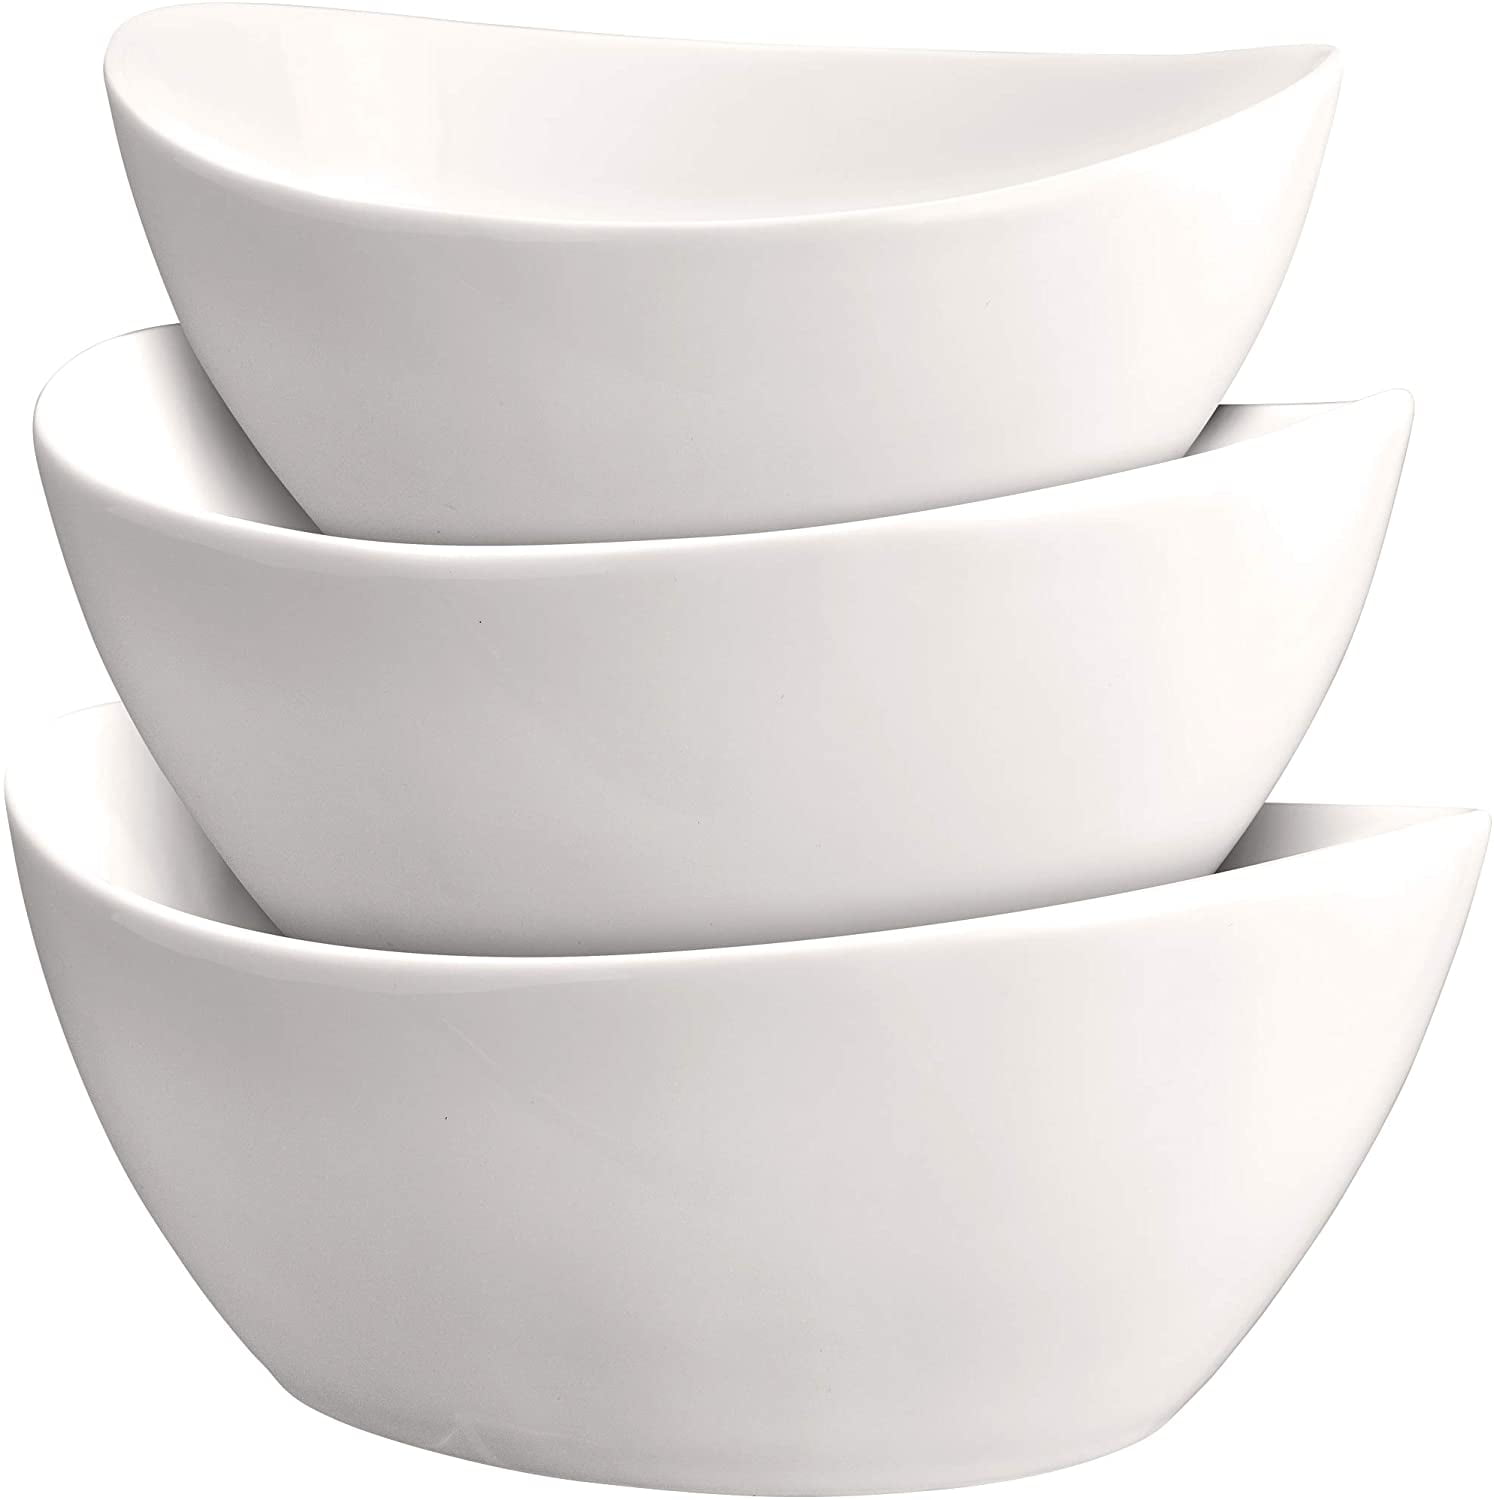 Set of 4 White Porcelain Bowls Shaped Cereal Breakfast Noodle Soup Bowls 